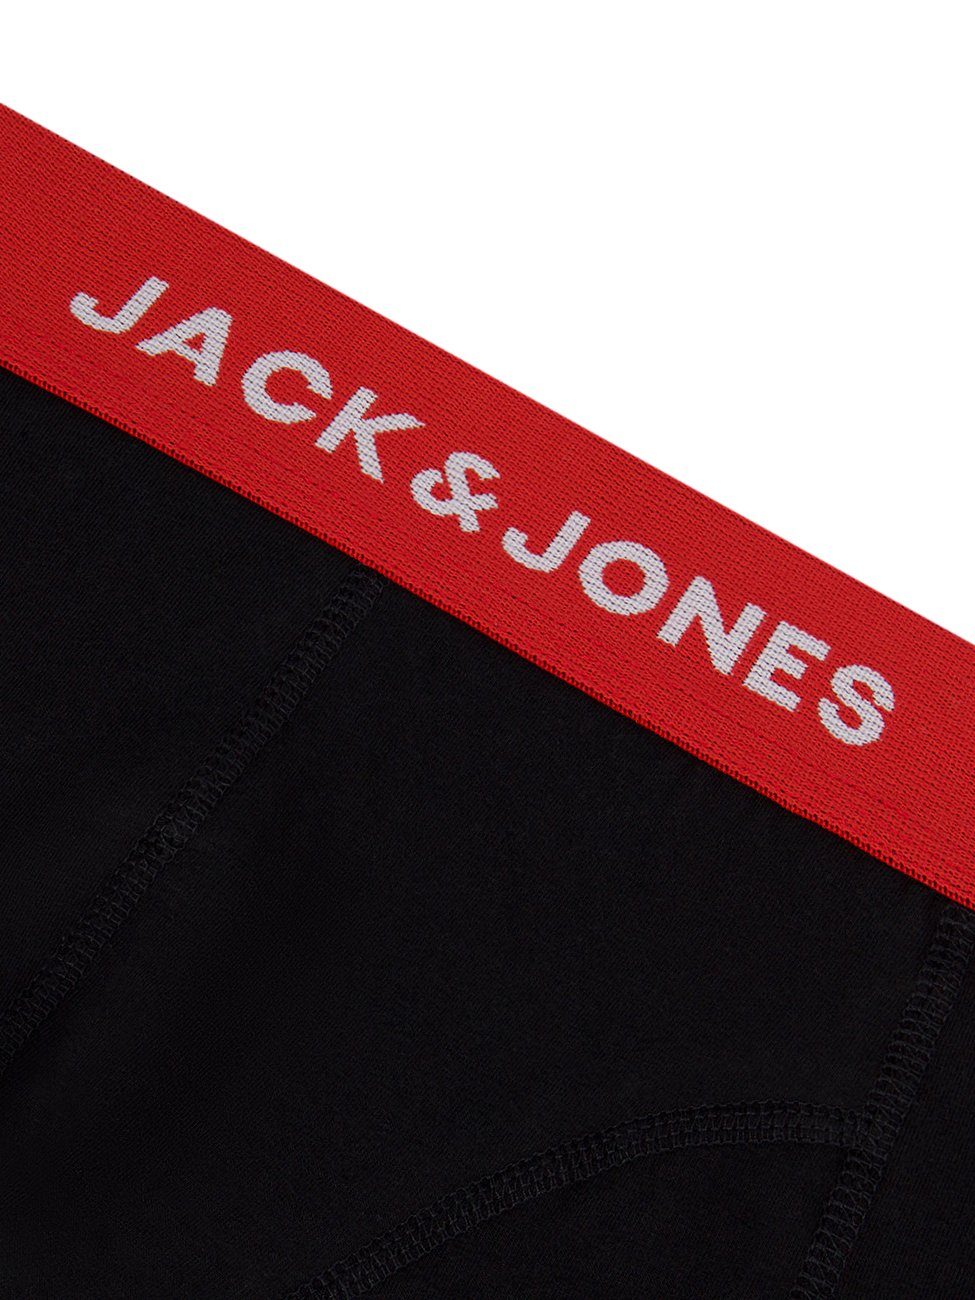 Jack Retroshorts 6er Jones Basic Trunks Pack 3 & mit 6-St) Stretch Herren Pack (Vorteilspack, Boxershorts Unterhosen